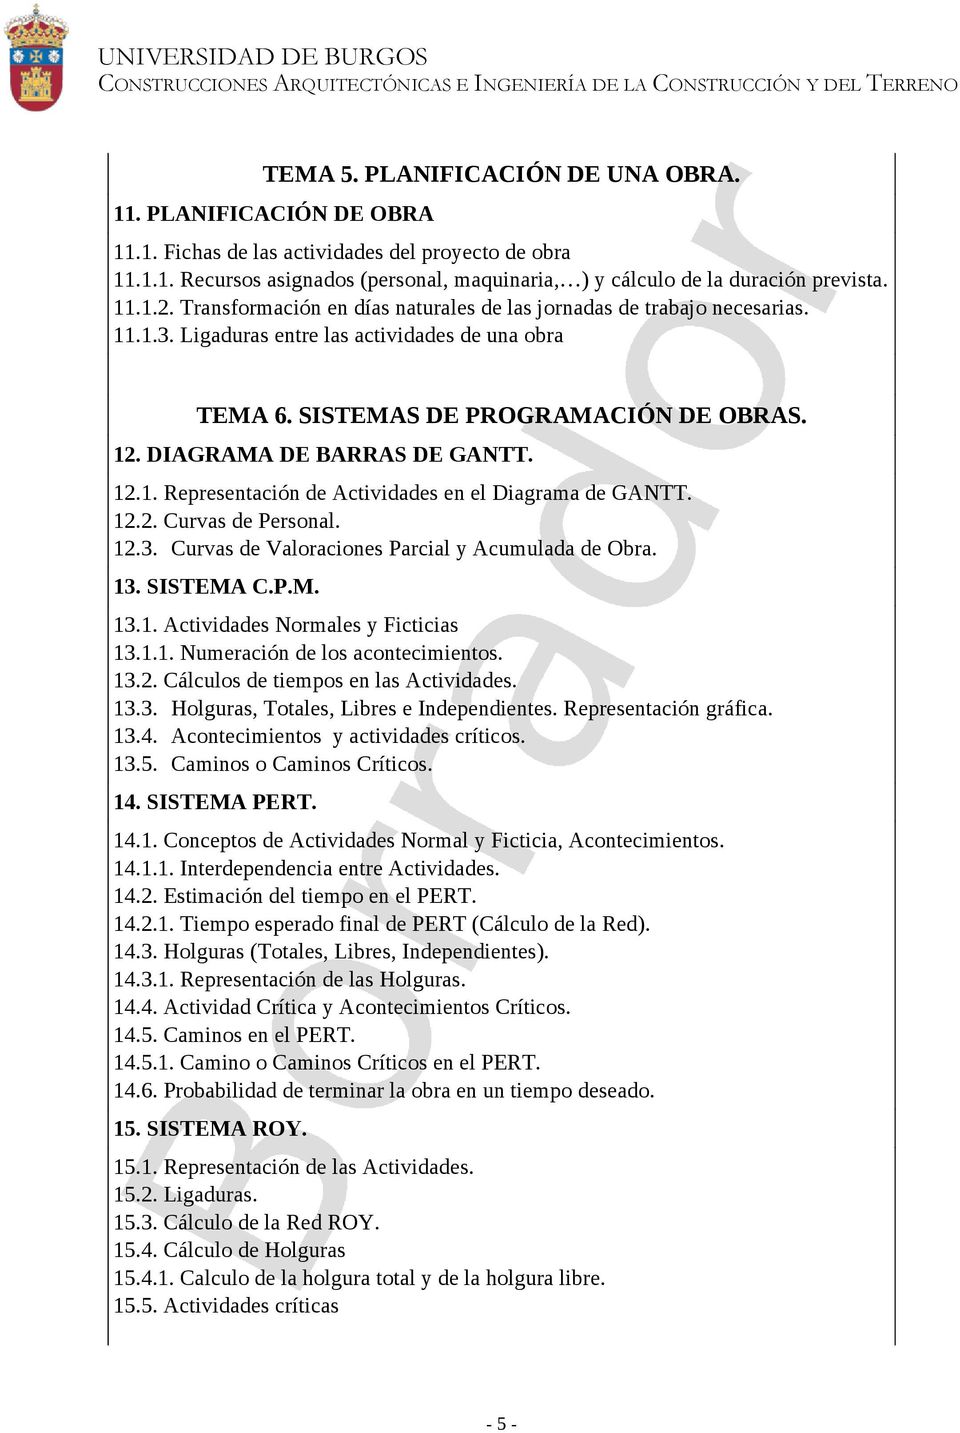 DIAGRAMA DE BARRAS DE GANTT. 12.1. Representación de Actividades en el Diagrama de GANTT. 12.2. Curvas de Personal. 12.3. Curvas de Valoraciones Parcial y Acumulada de Obra. 13. SISTEMA C.P.M. 13.1. Actividades Normales y Ficticias 13.